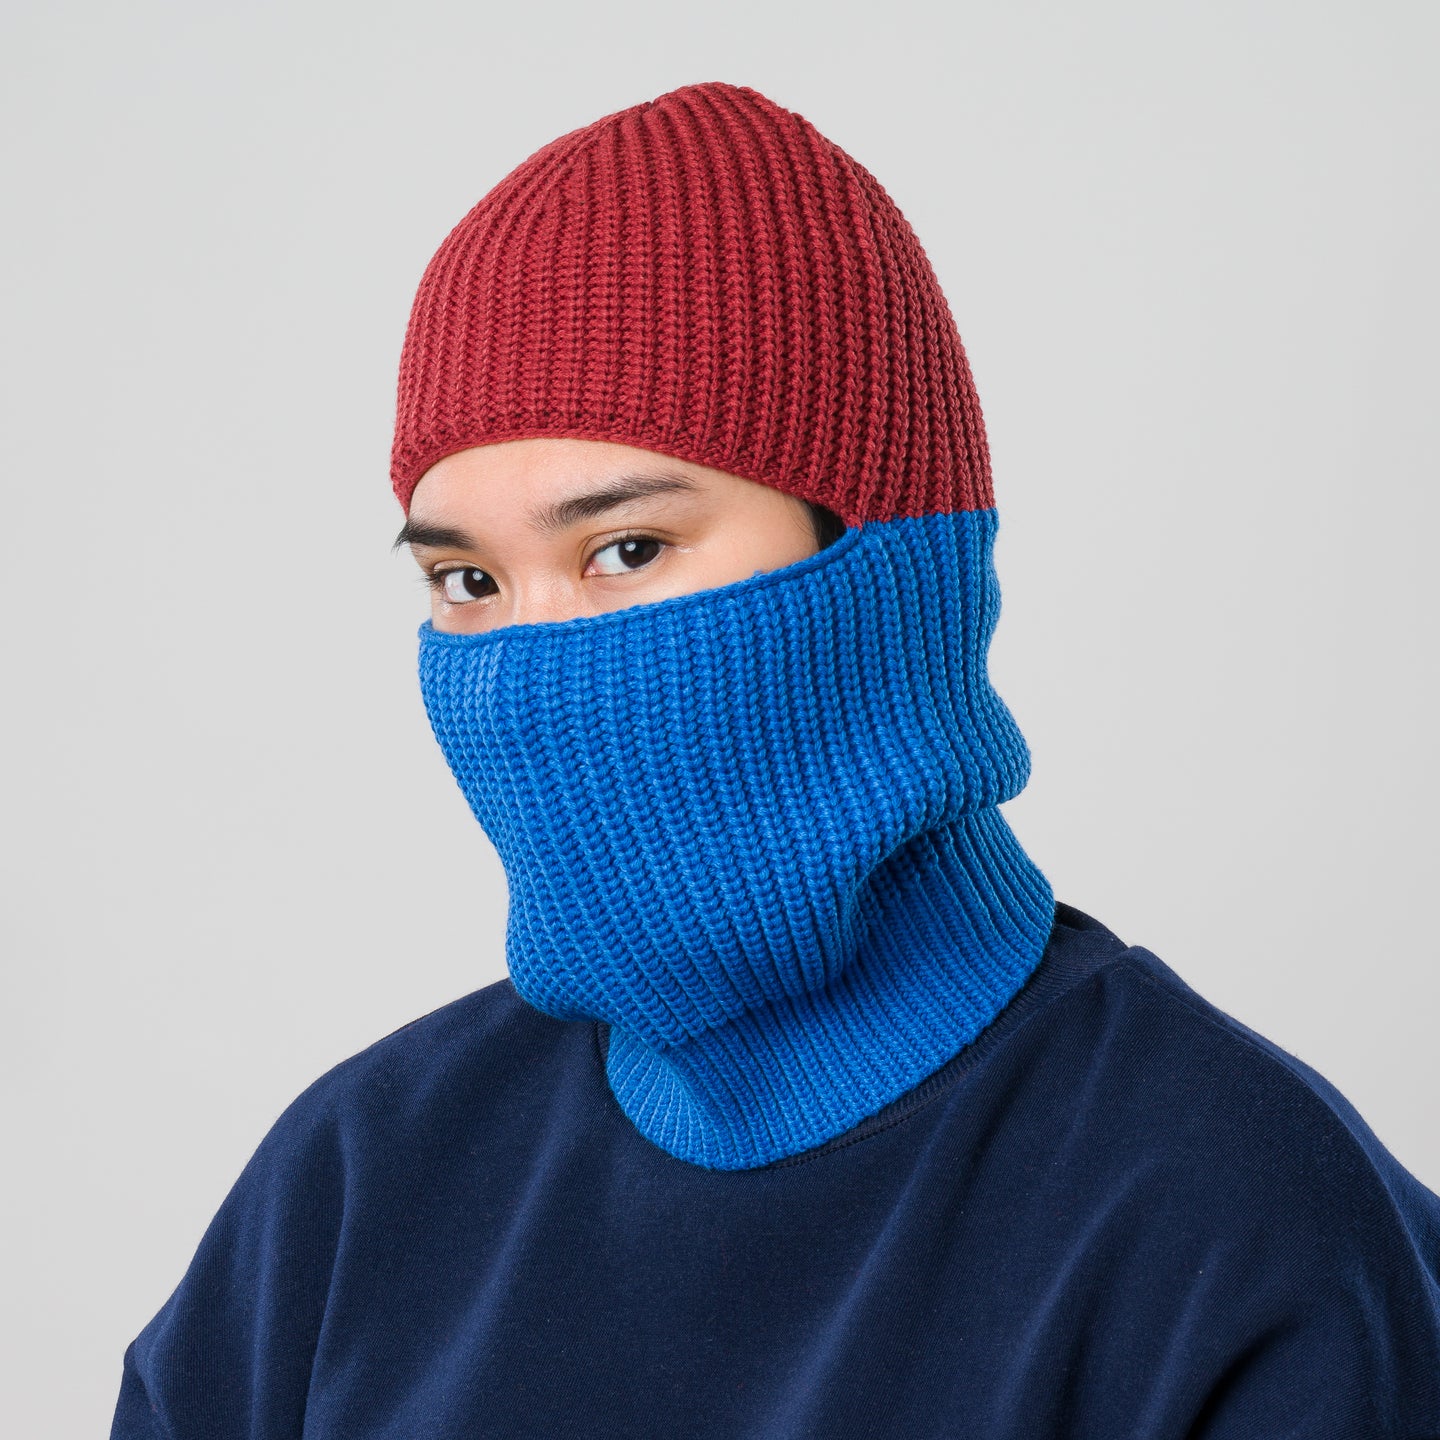 Ribbed Colorblock Knit Balaclava Ski Mask Convertible Gaiter